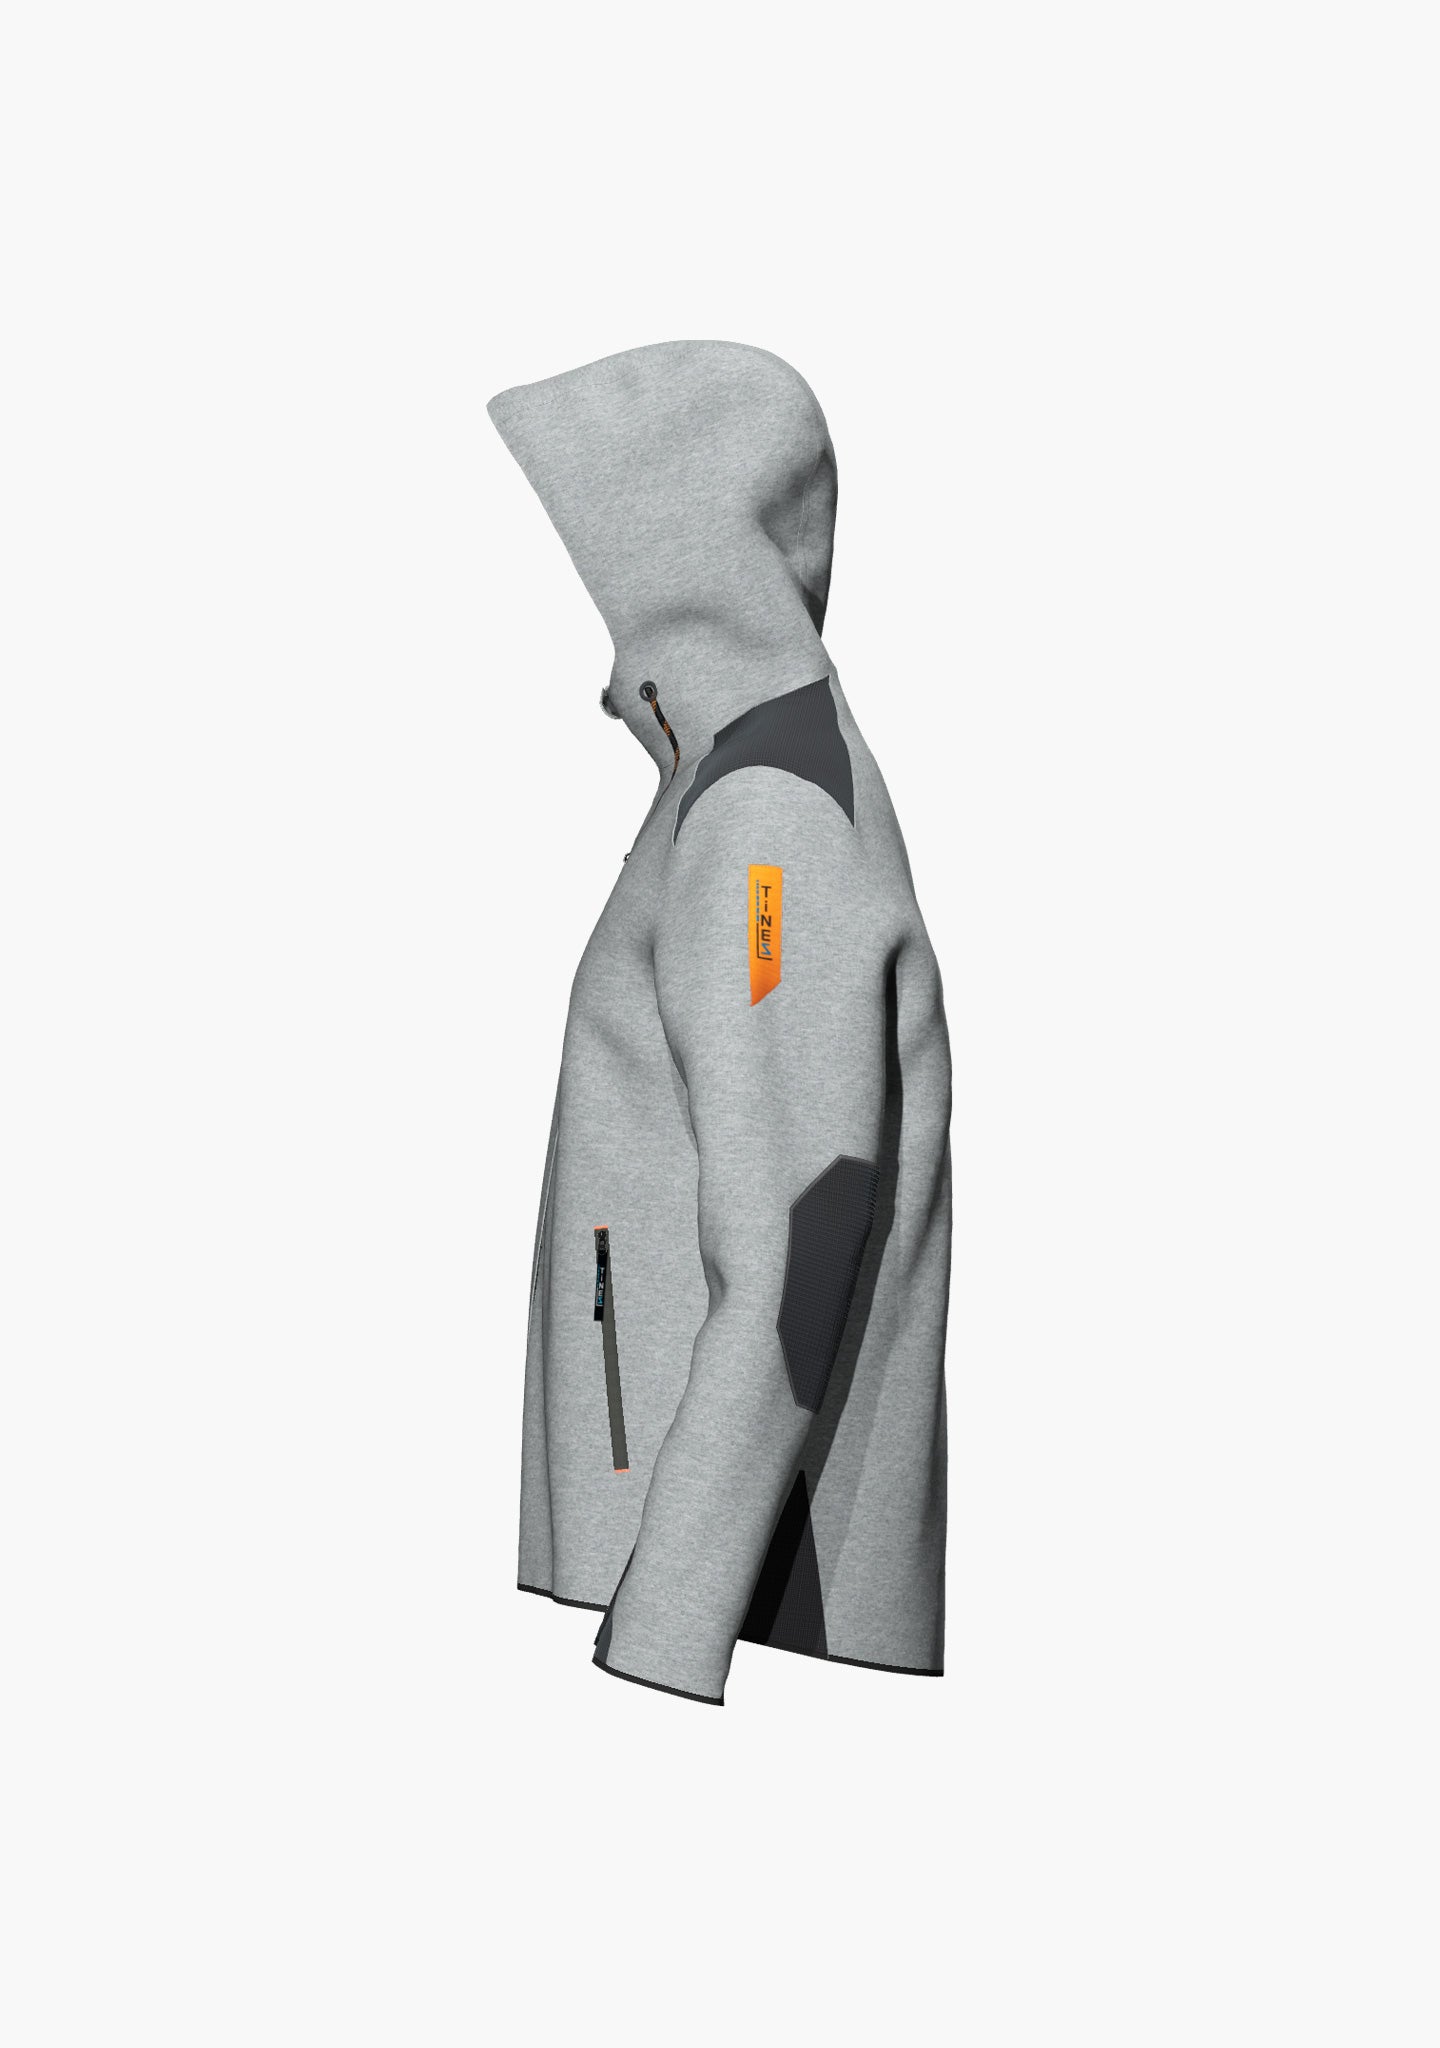 •	Gemütlicher Hoody mit abriebfesten Verstärkungen an Schultern, Ellenbogen, Ärmeln und Body und trendigen Akzenten in orange (Ansicht links)